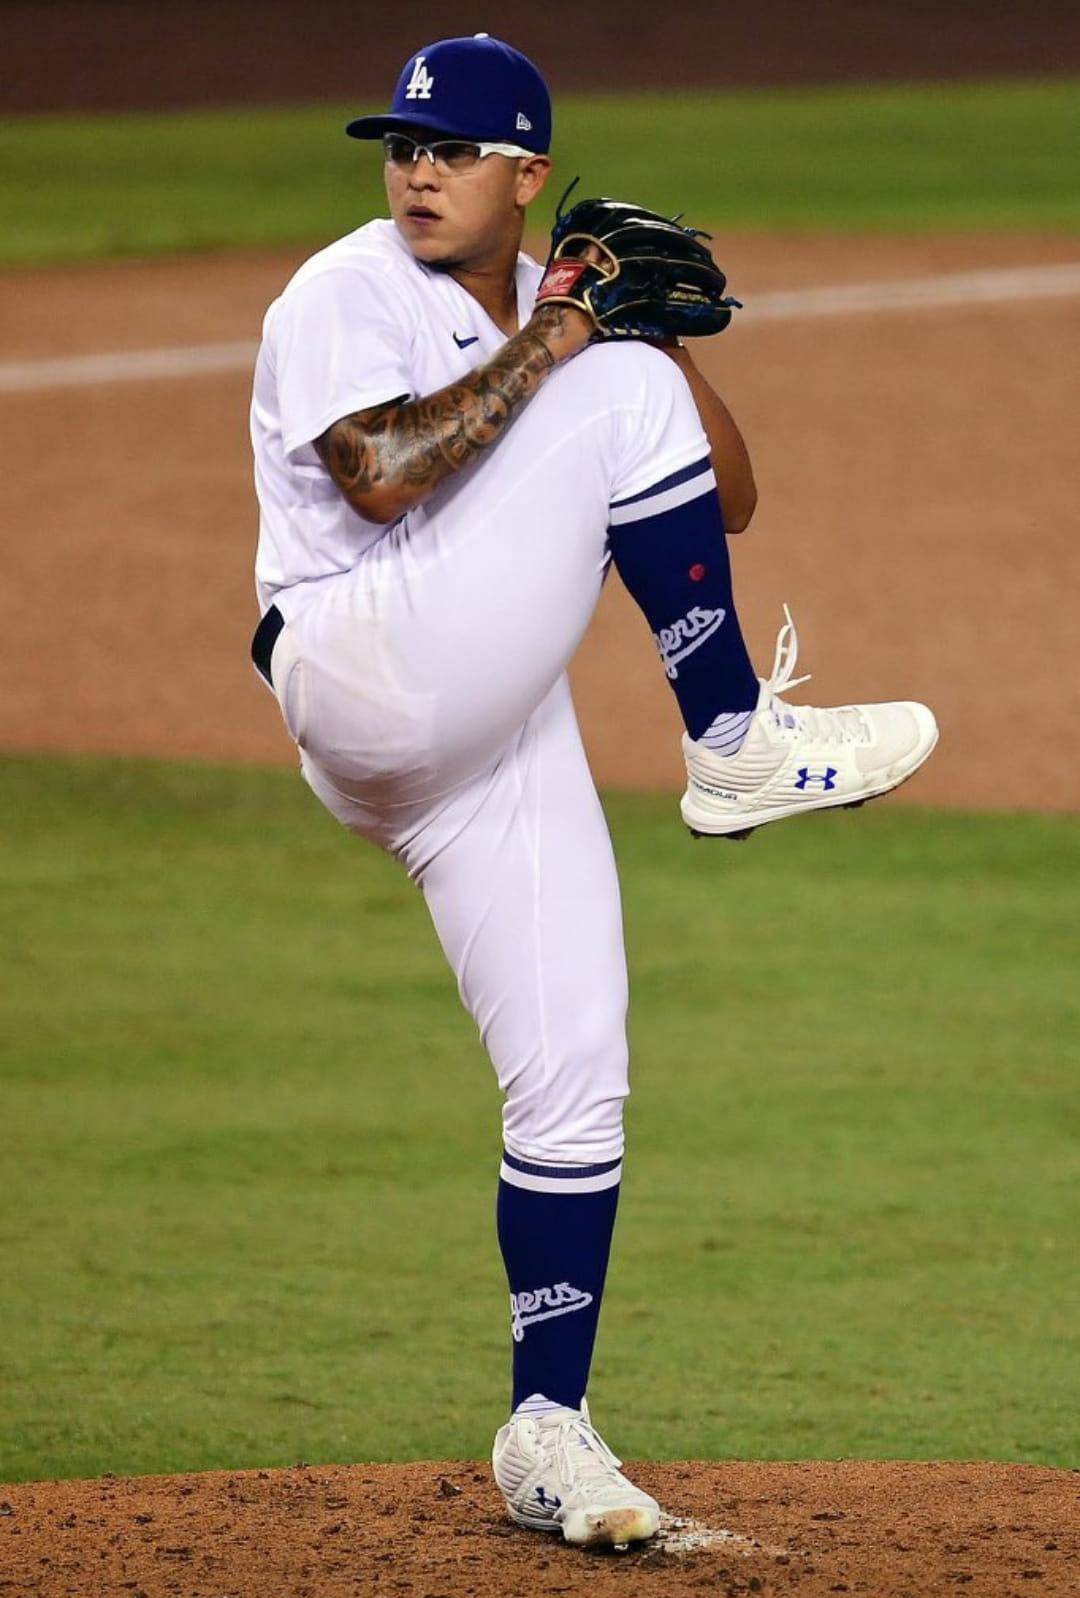 Un jugador de béisbol con un guante de béisbol  Descripción generada automáticamente